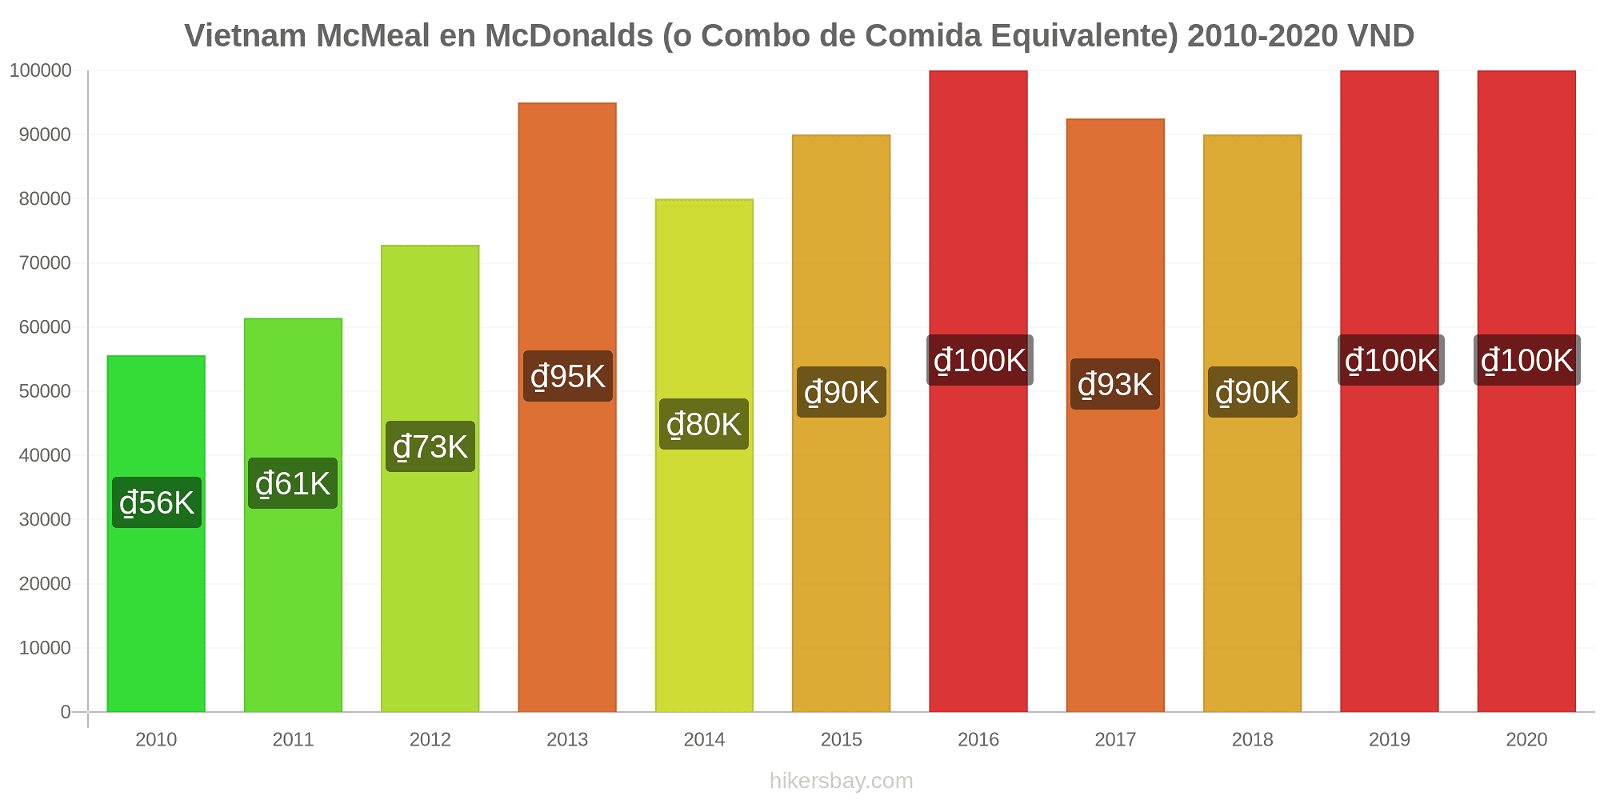 Vietnam cambios de precios McMeal en McDonalds (o menú equivalente) hikersbay.com